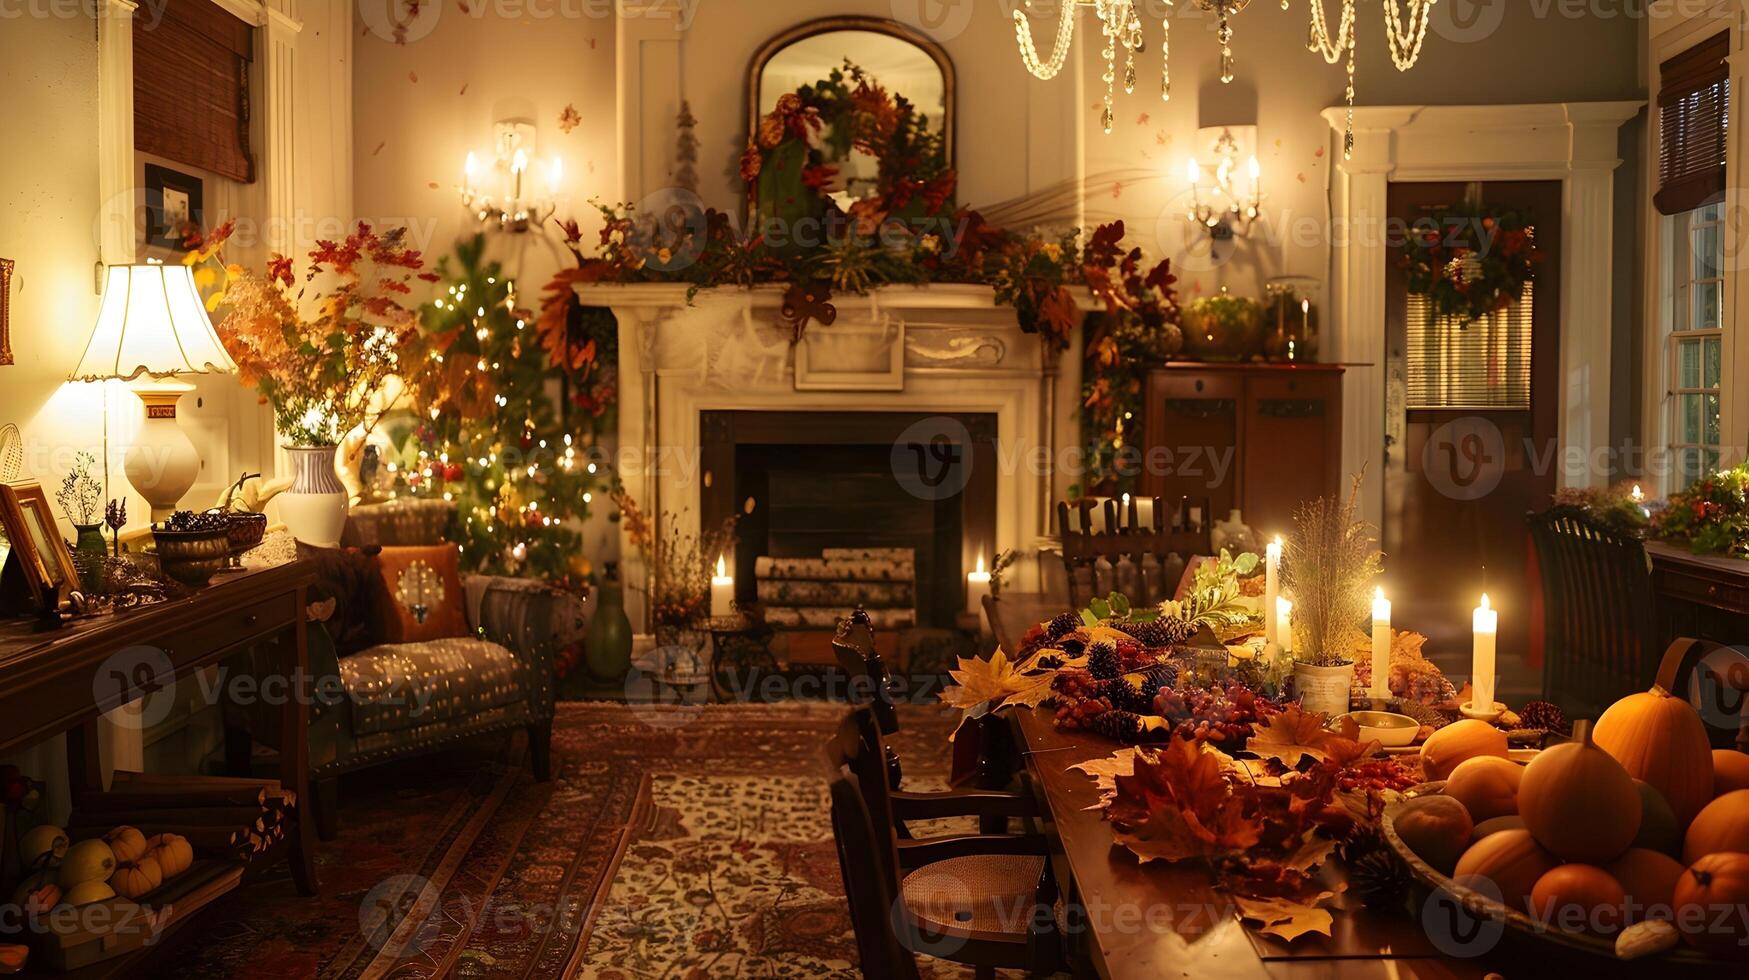 acolhedor Natal lareira decoração com festivo enfeites e sazonal acentos dentro caloroso casa interior foto